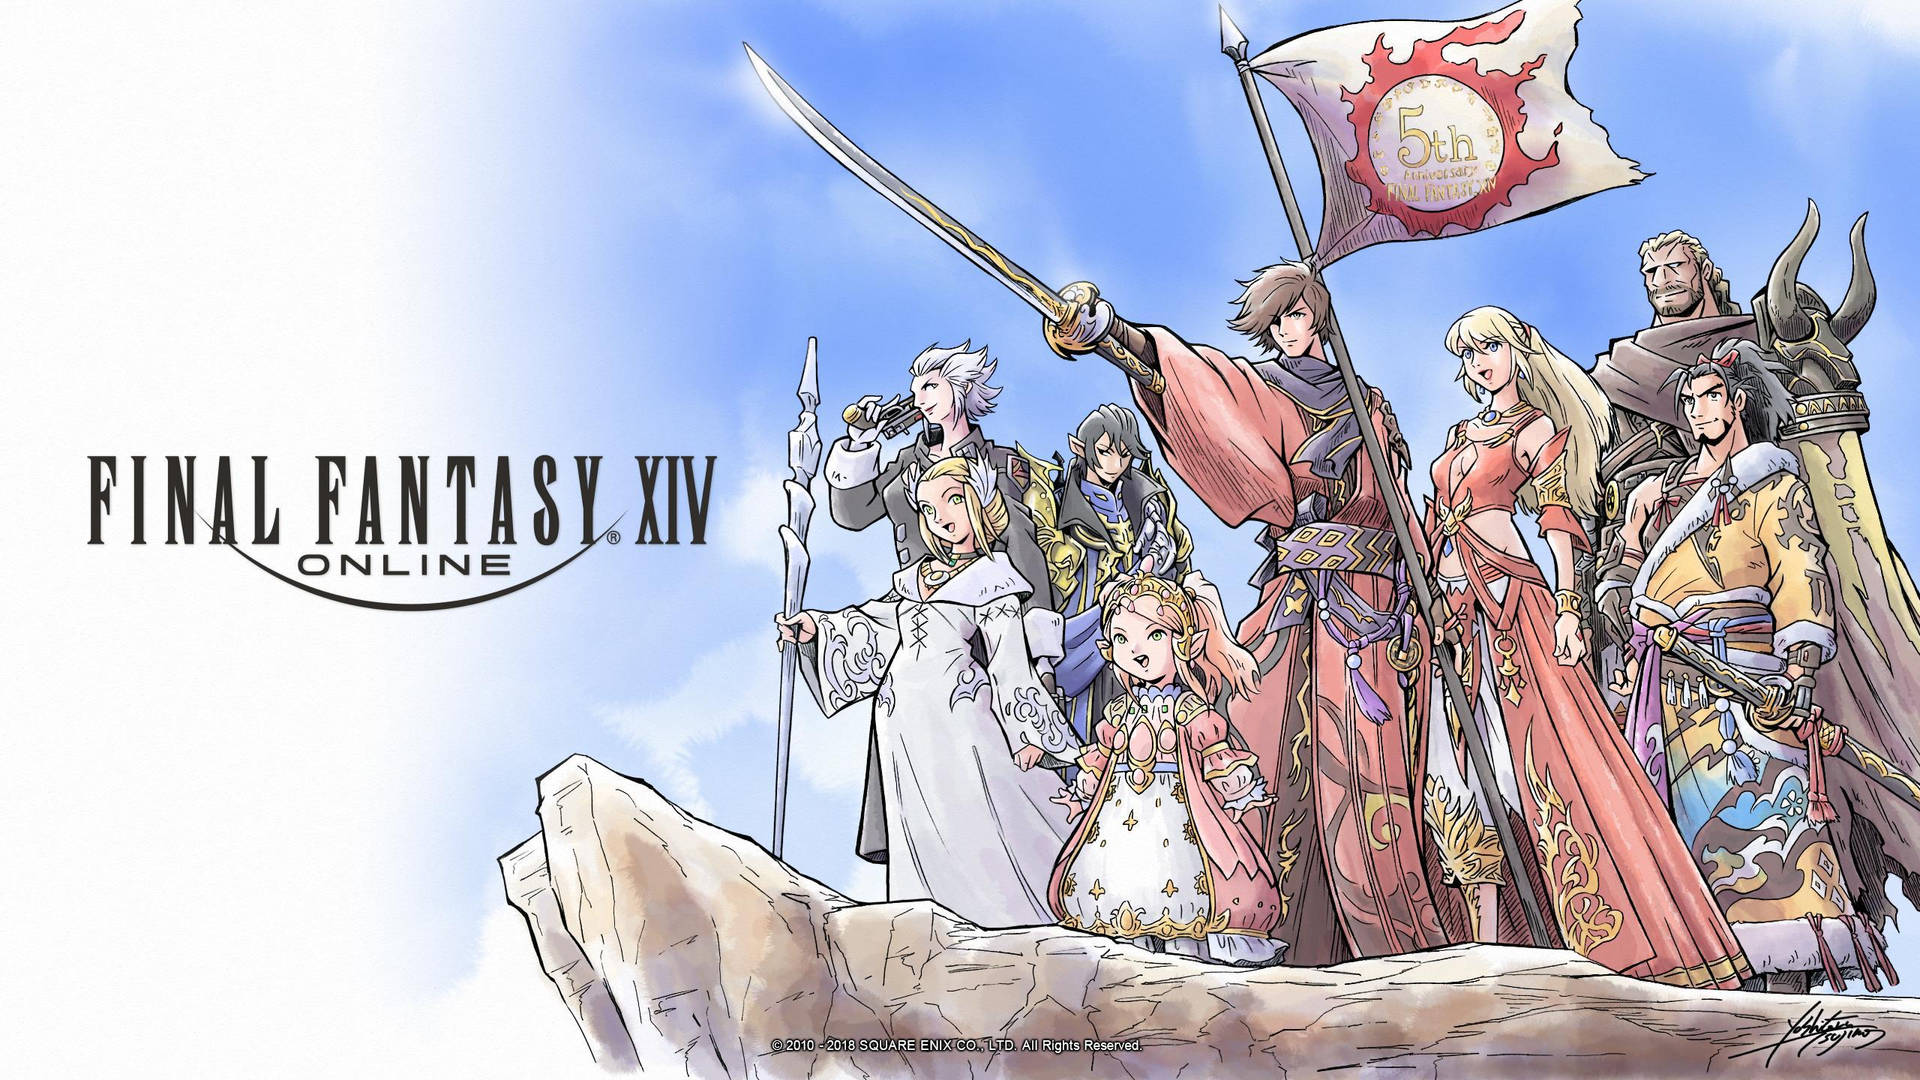 Final Fantasy Xiv Wallpaper